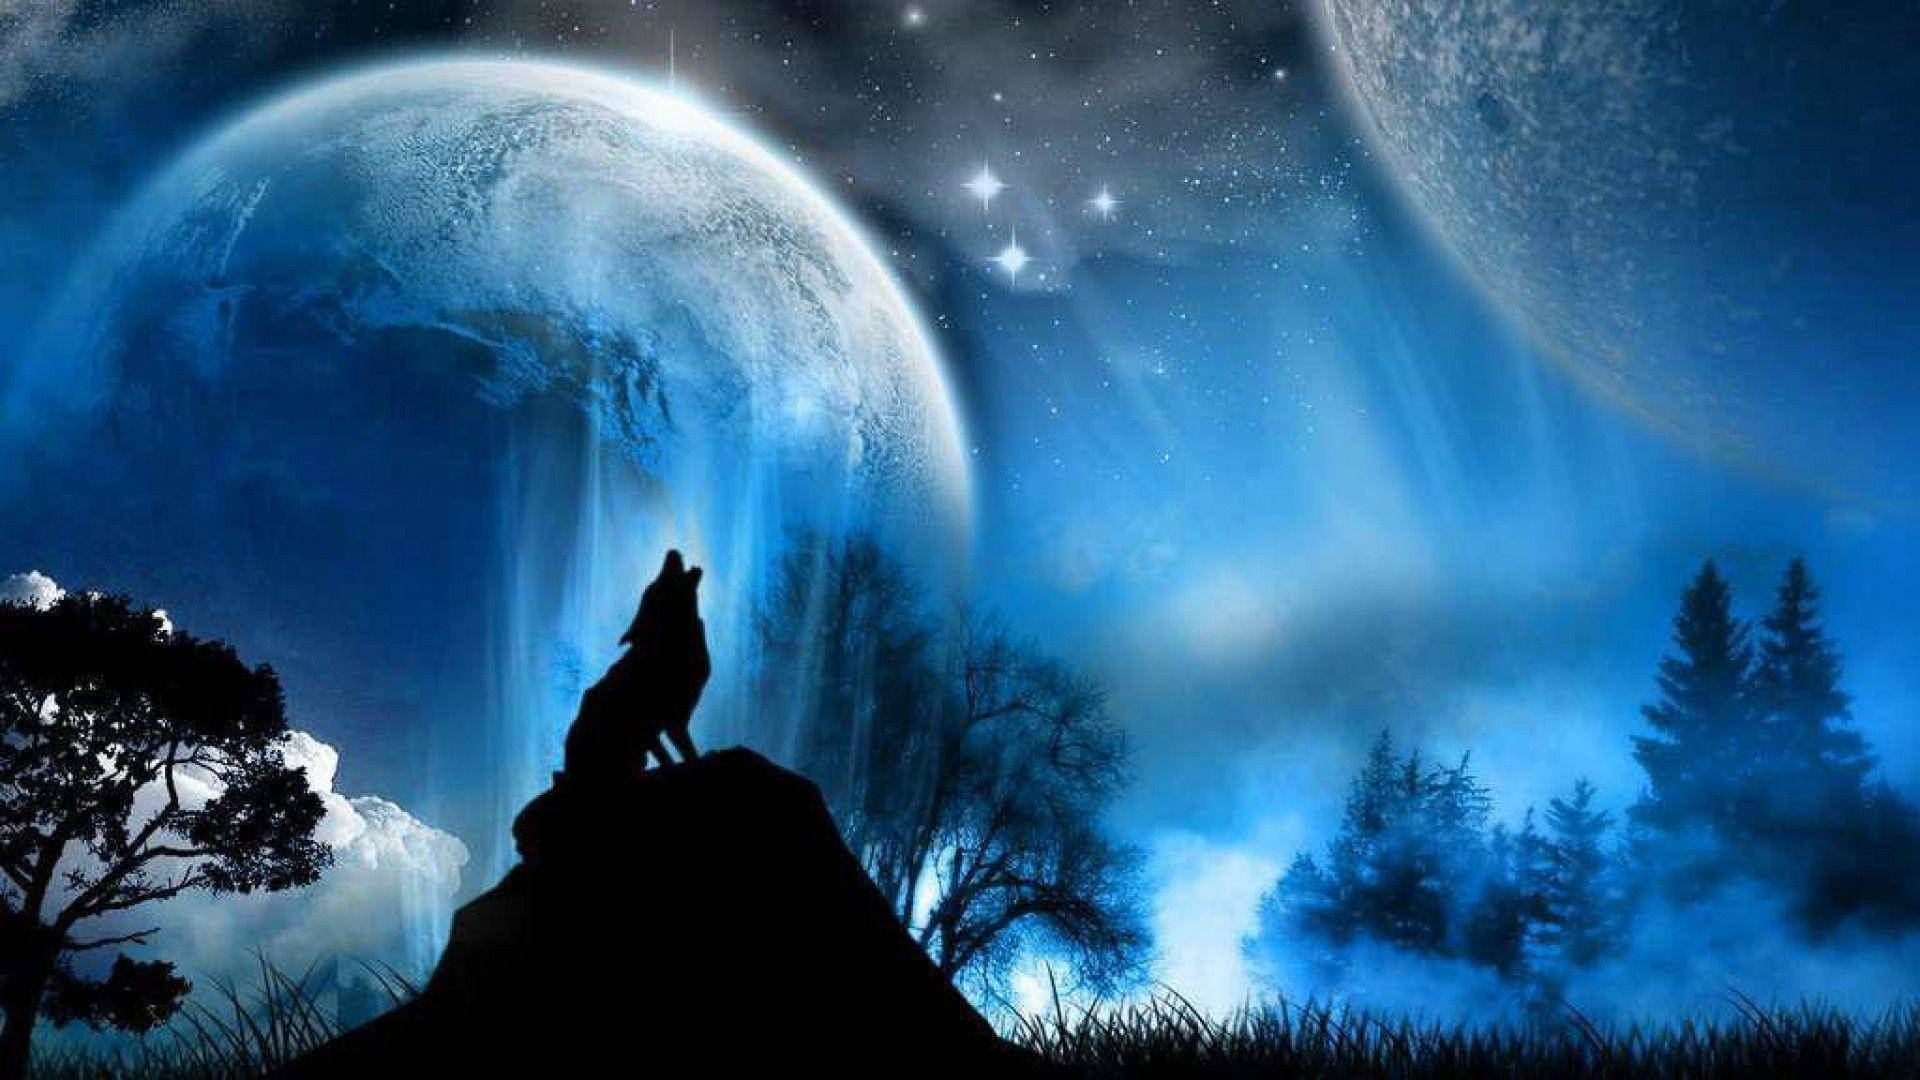 Howling Wolf 1080p Hd Desktop Wallpaper